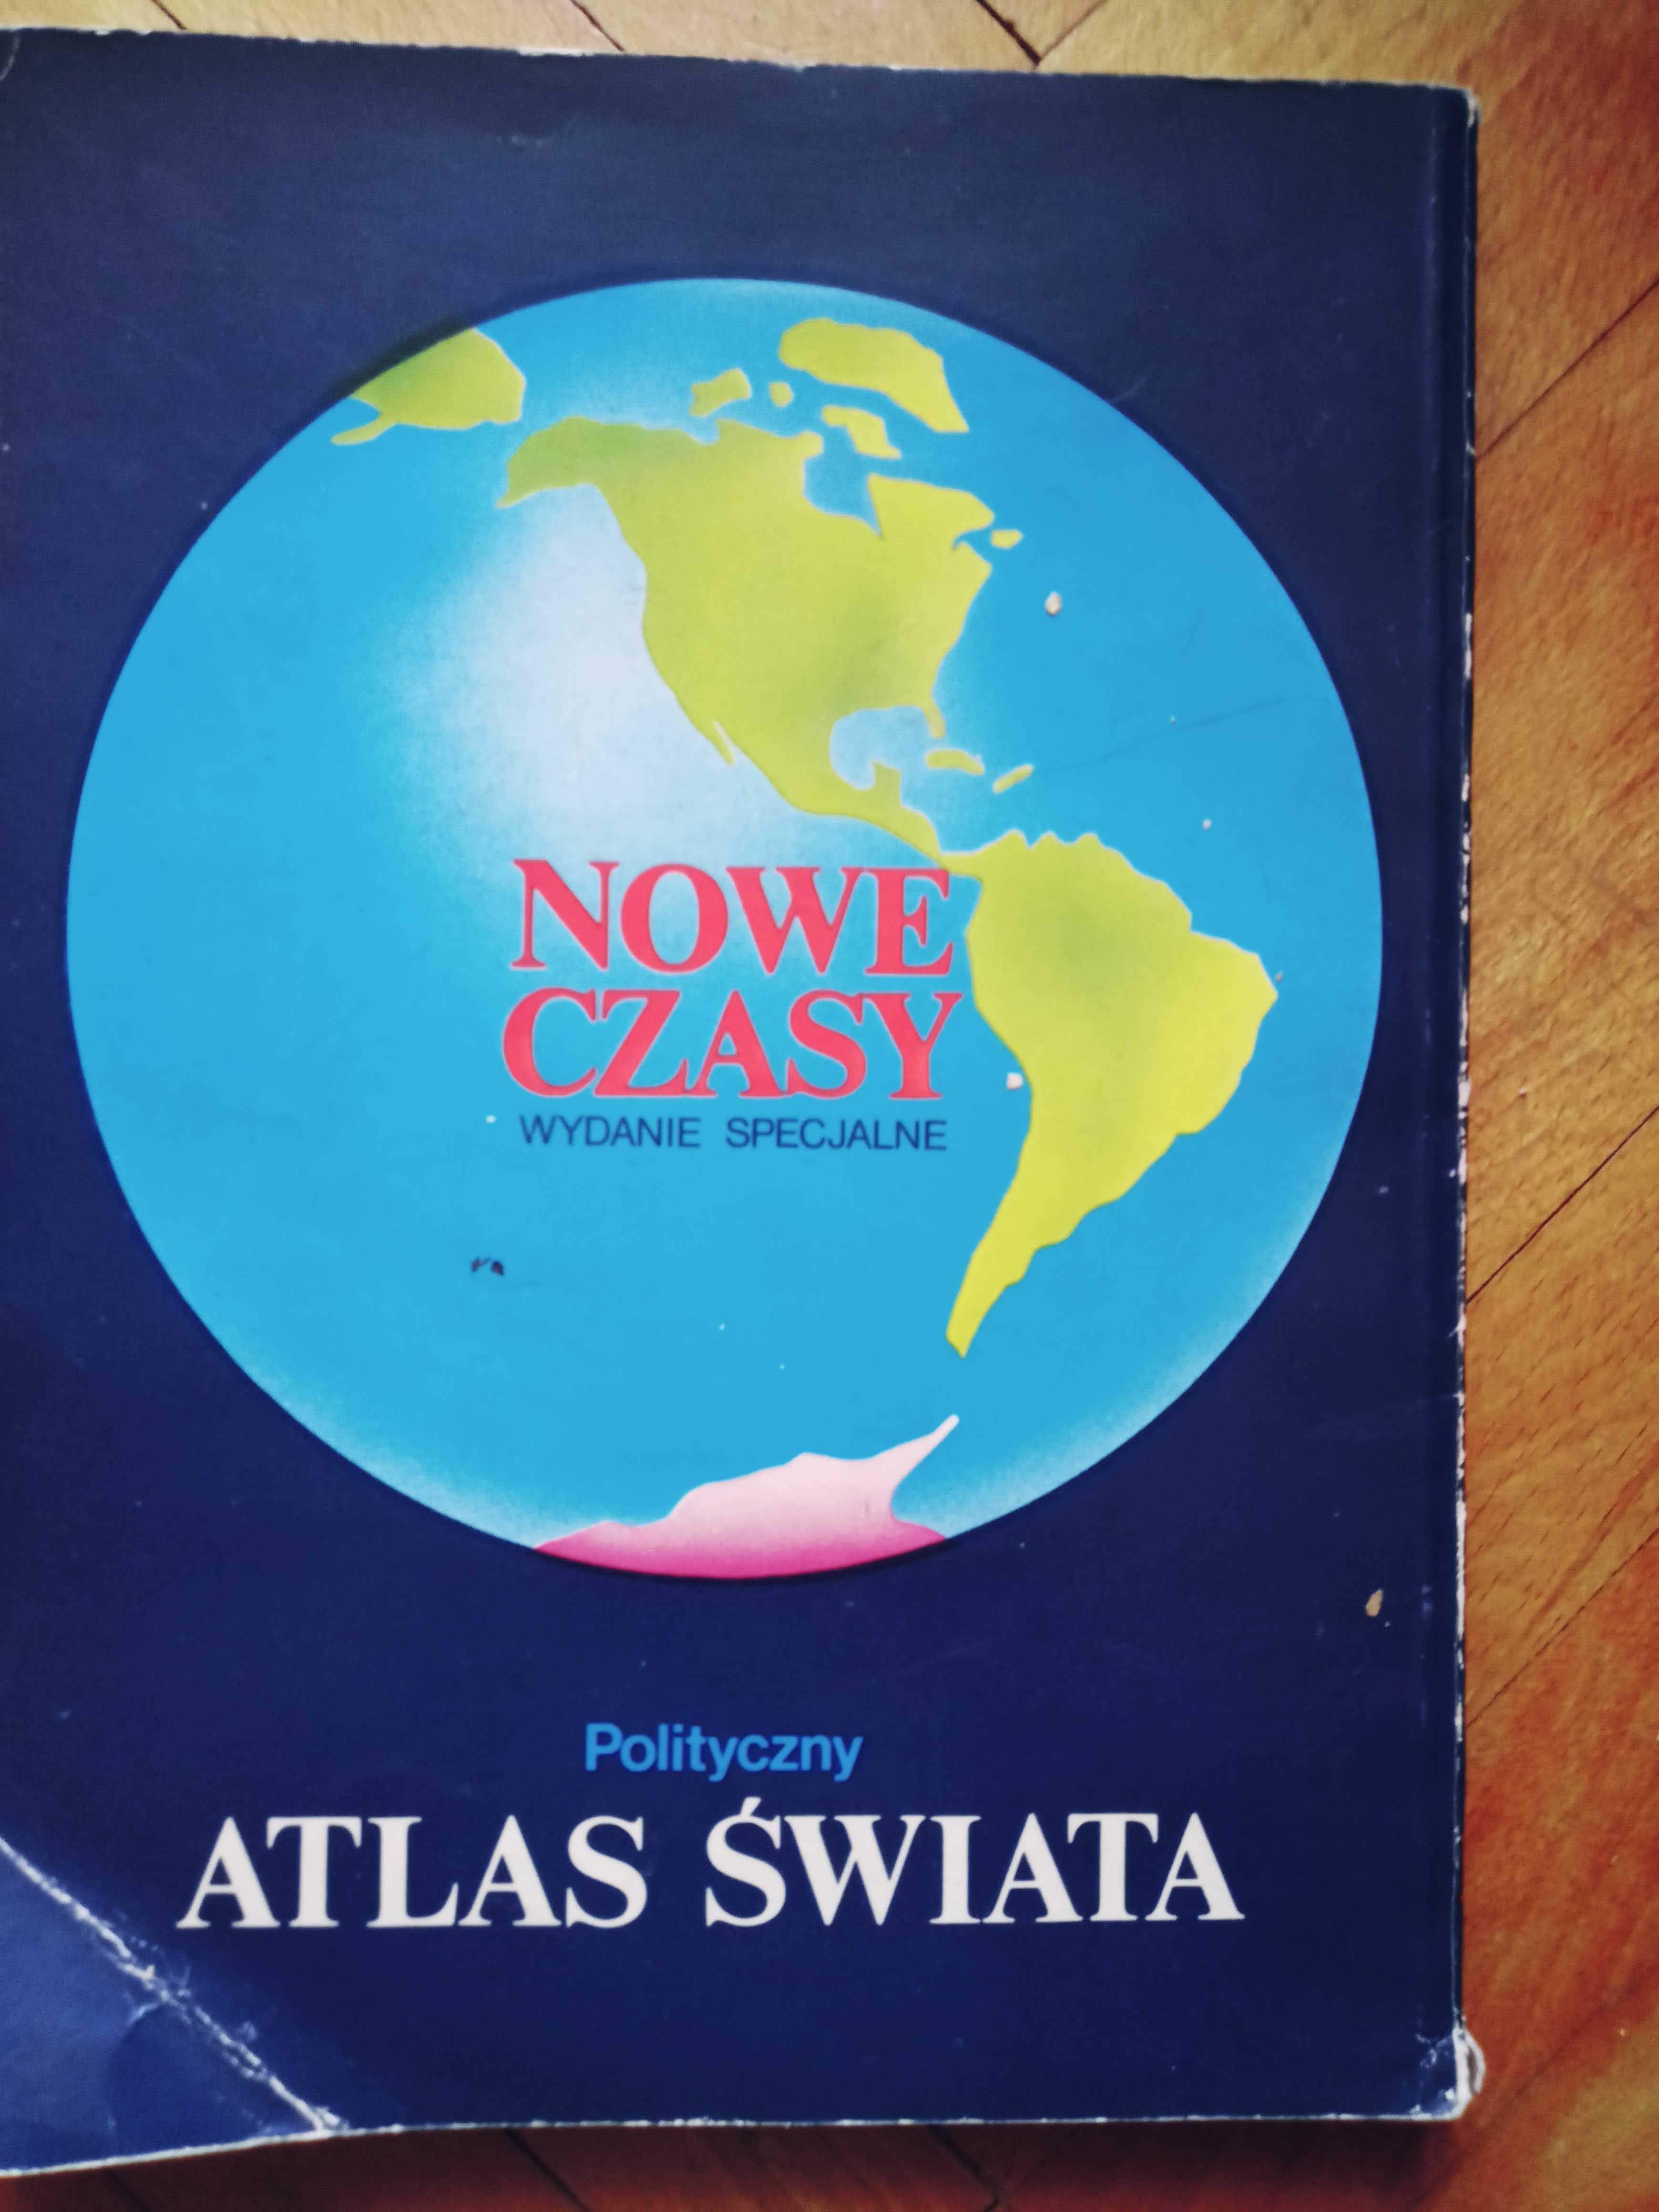 Polityczny Atlas Świata 1988, wydanie specjalne.